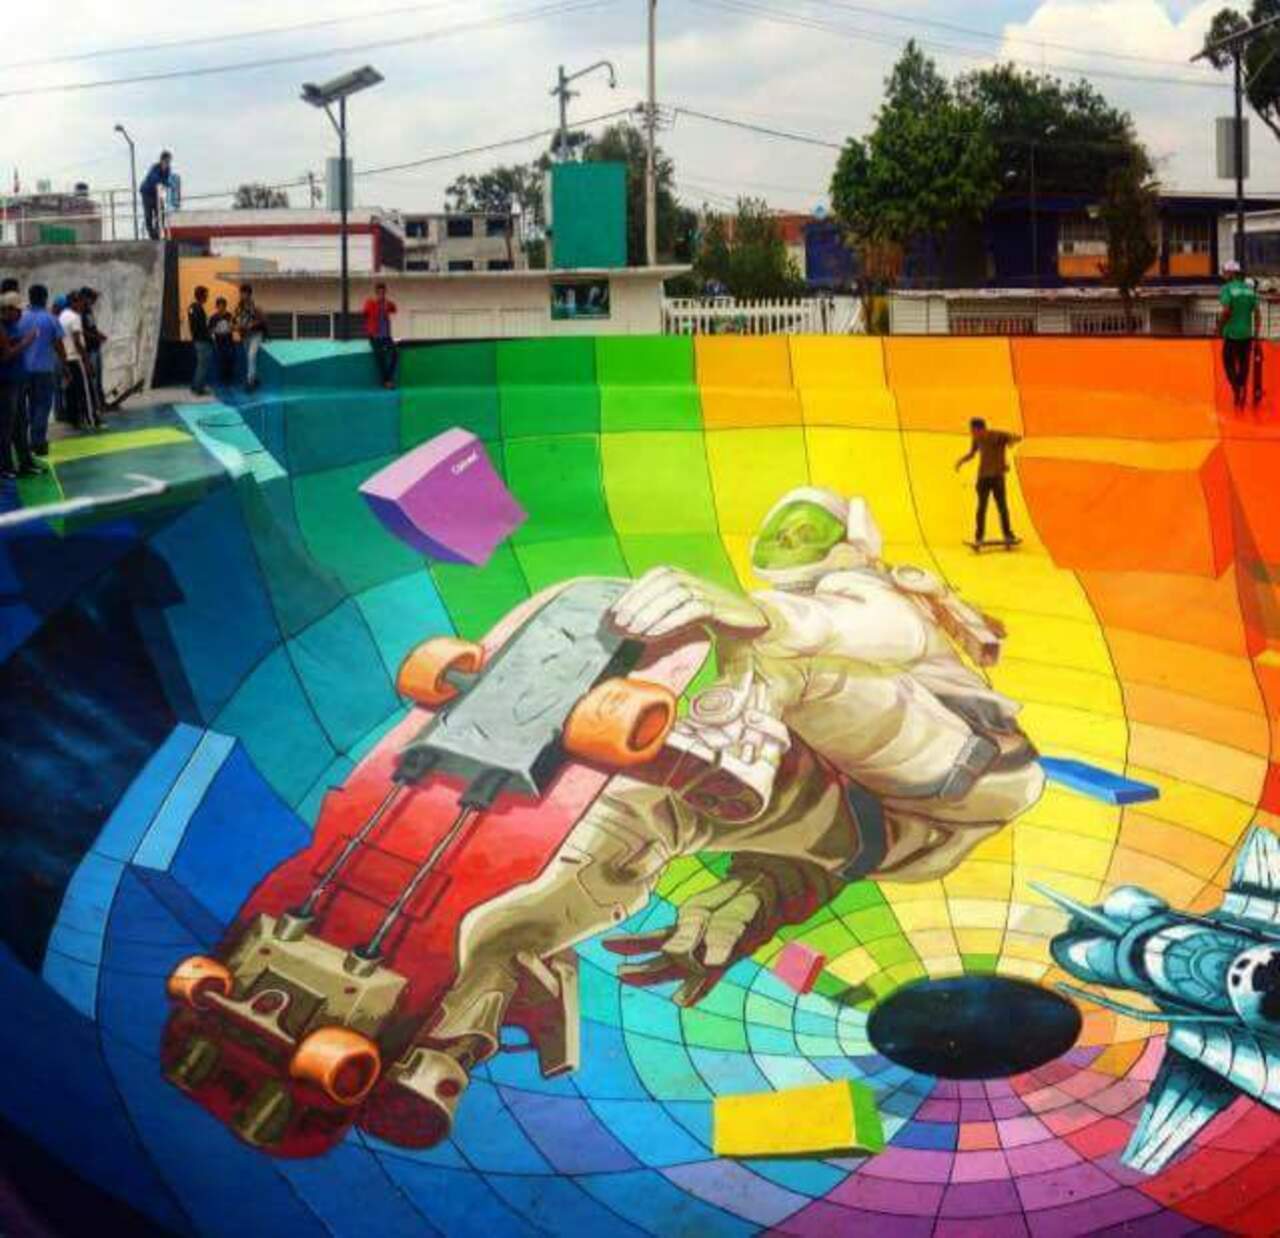 BESTIAL "skate park"! 
#Graffiti #StreetArt #GraffitiArt http://t.co/4LdTyojTre